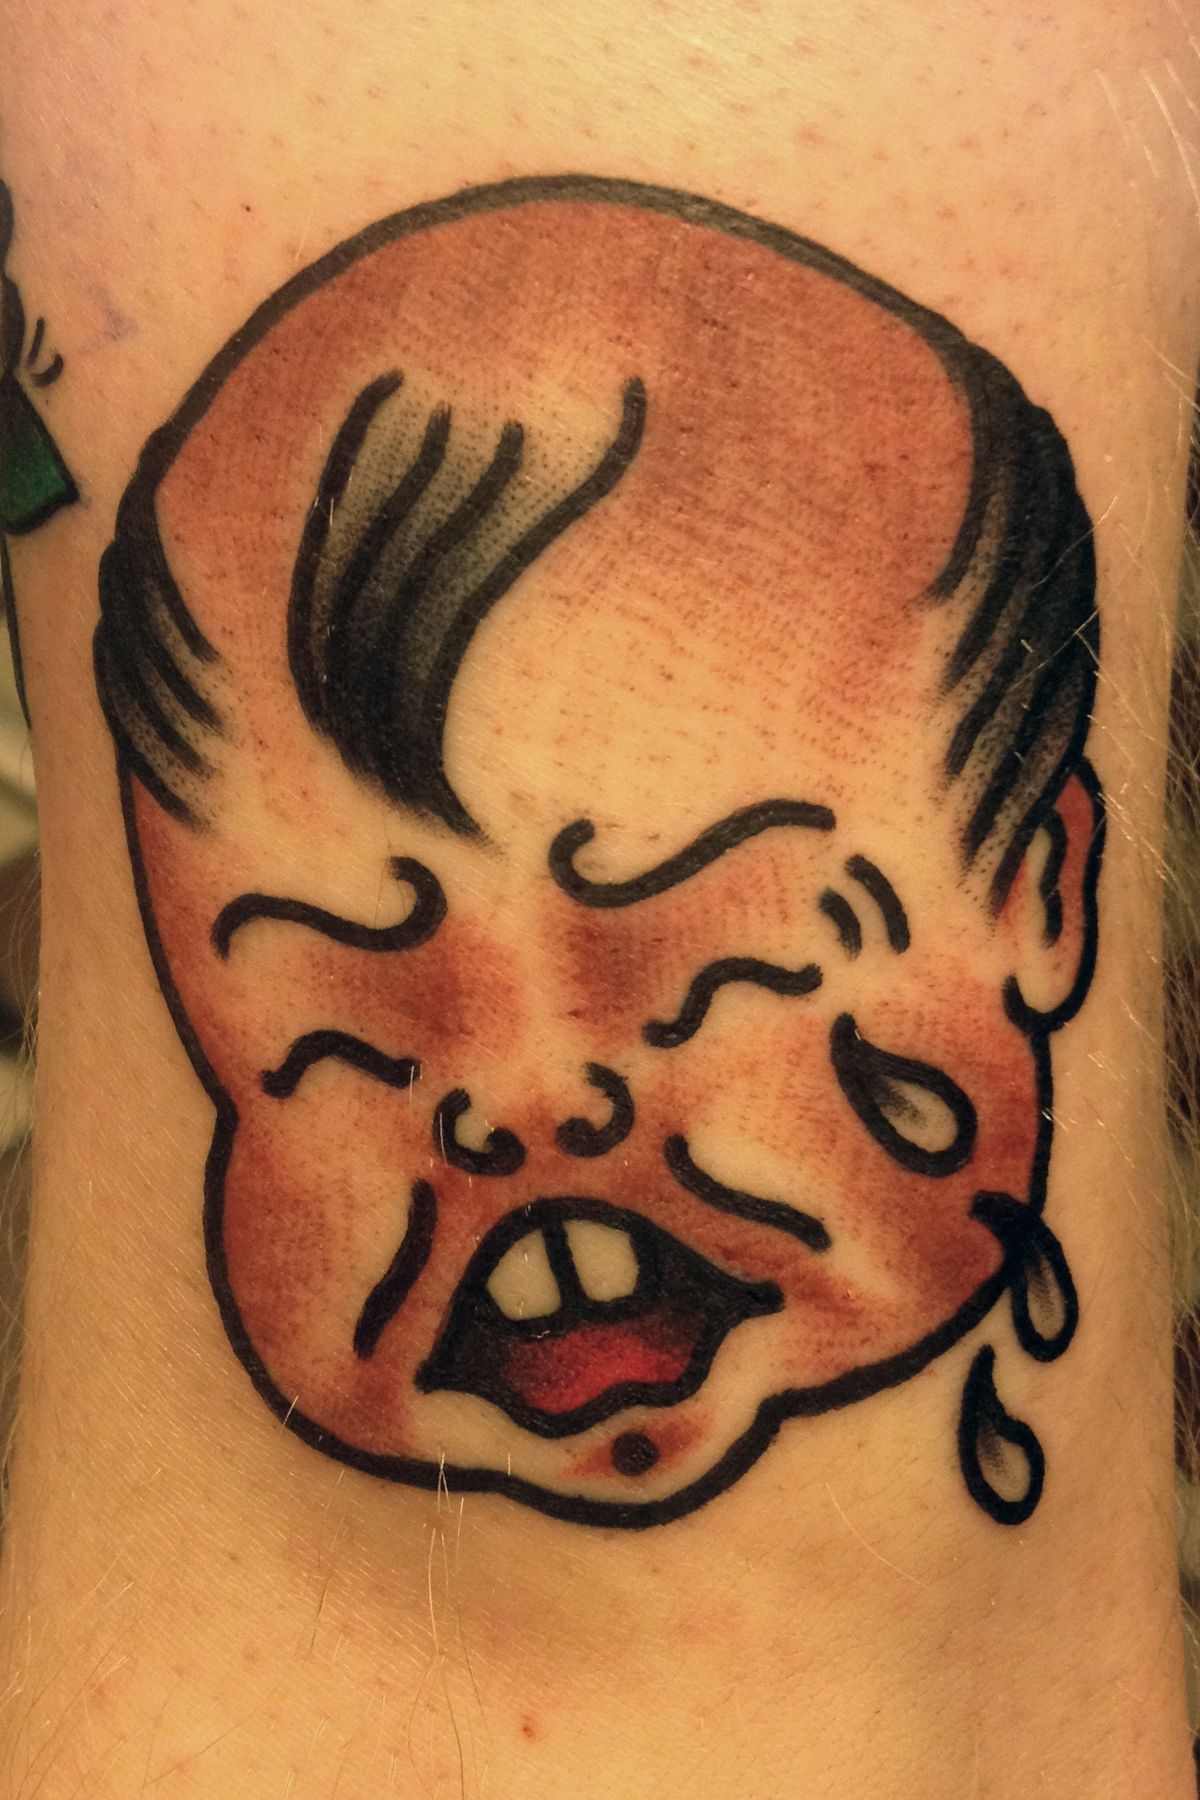 christie beveridge add crying baby tattoo photo